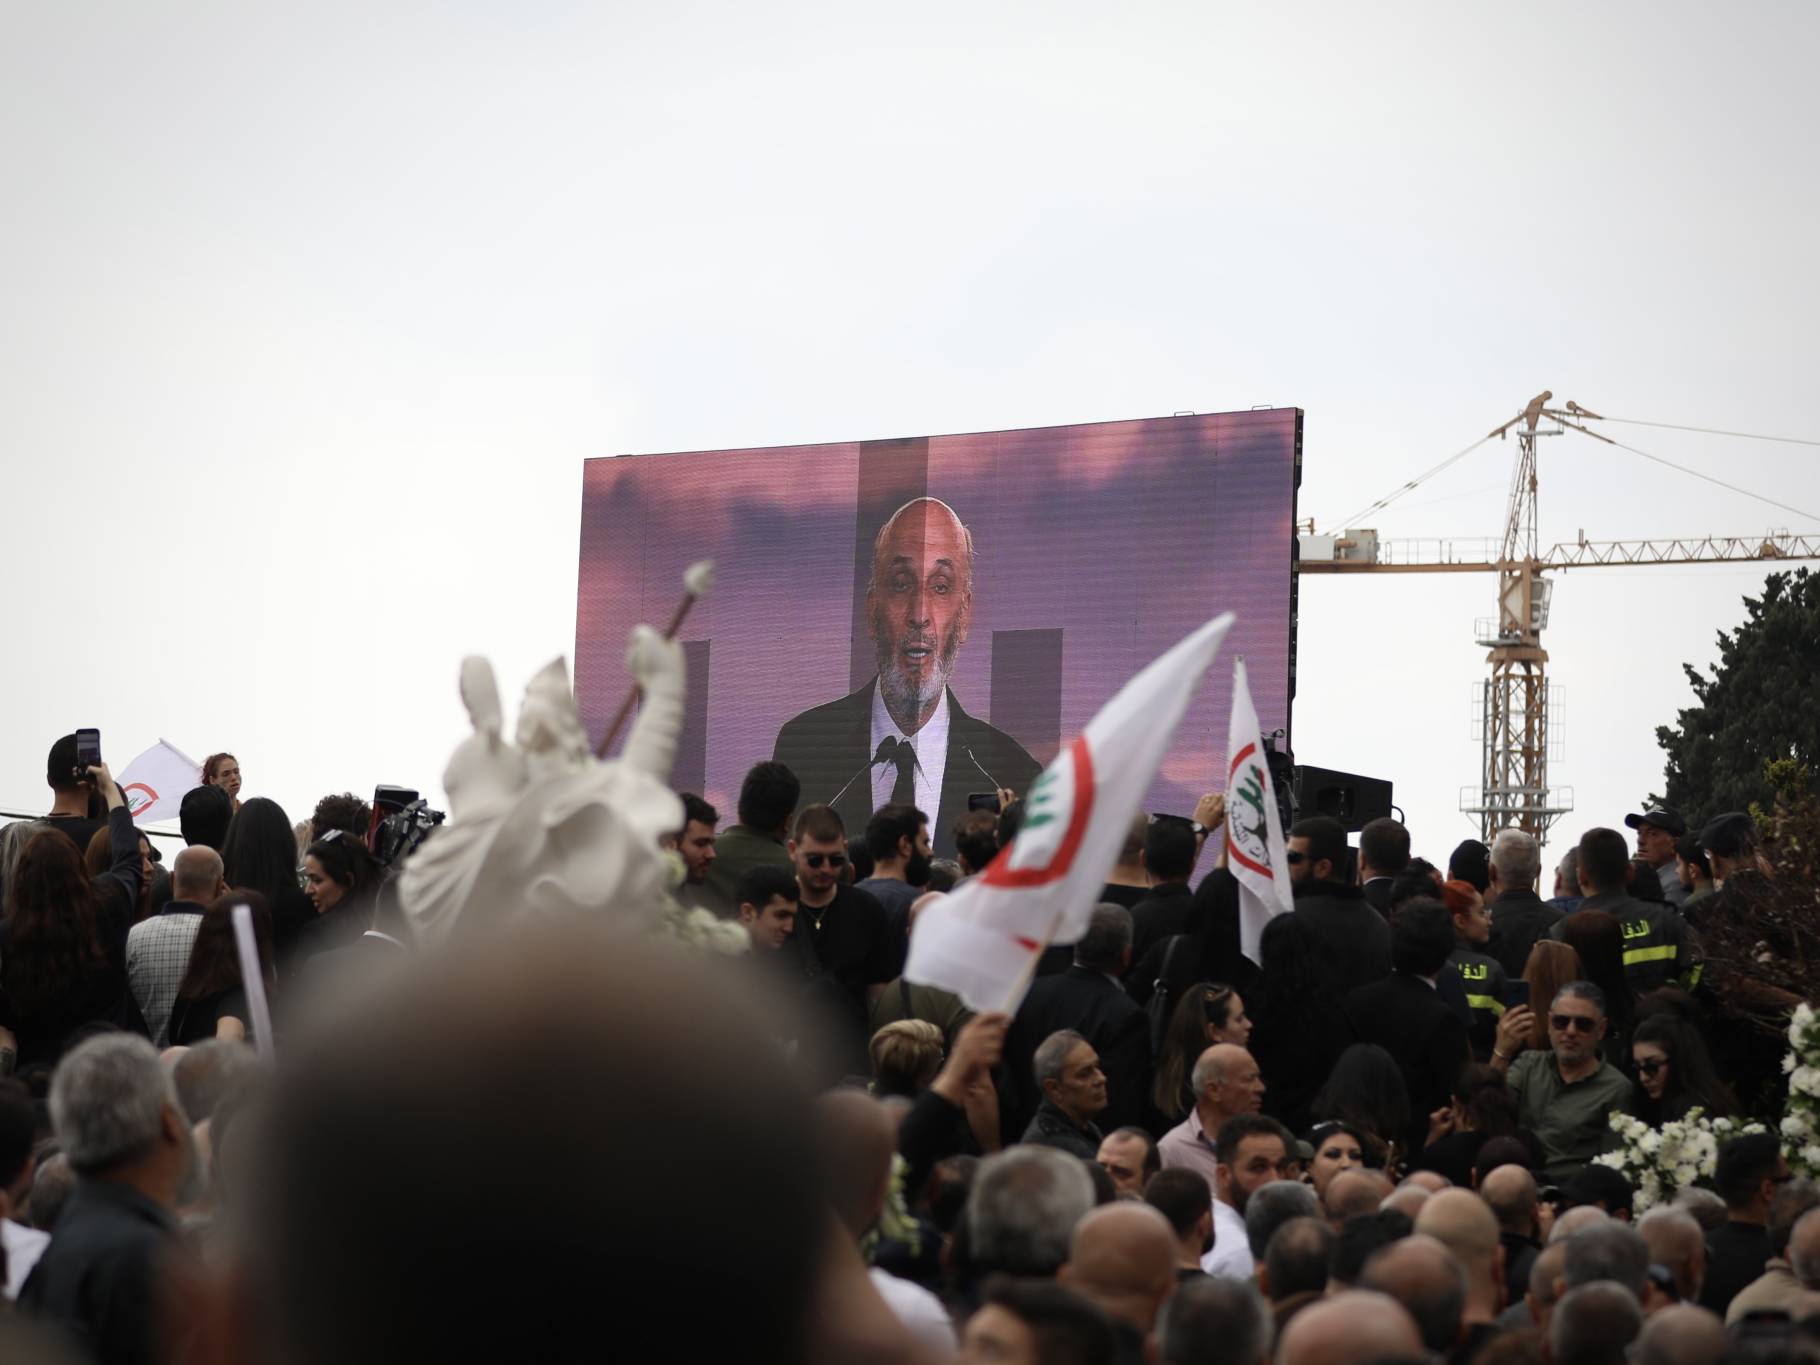 L'office fini, c'est le chef des Forces libanaises, Samir Geagea, qui s'adresse en direct à la foule, via écran. « La confrontation se poursuit. Elle sera longue. (...) Que personne ne mise sur notre désespoir», déclare-t-il. Photo Matthieu Karam